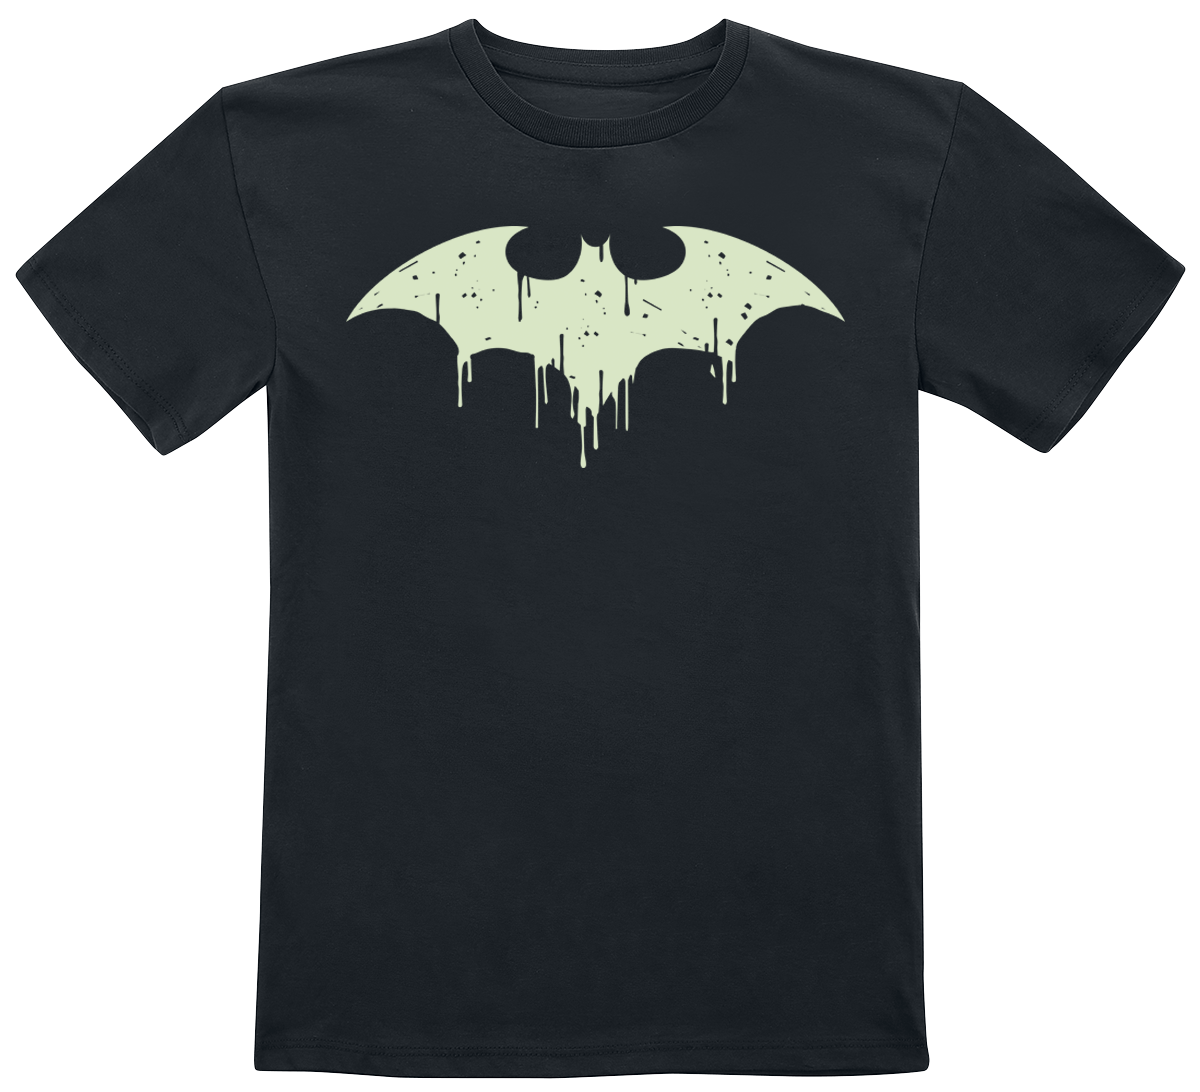 Batman - DC Comics T-Shirt für Kinder - Kids - GITD logo - für Mädchen & Jungen - schwarz  - EMP exklusives Merchandise! von Batman